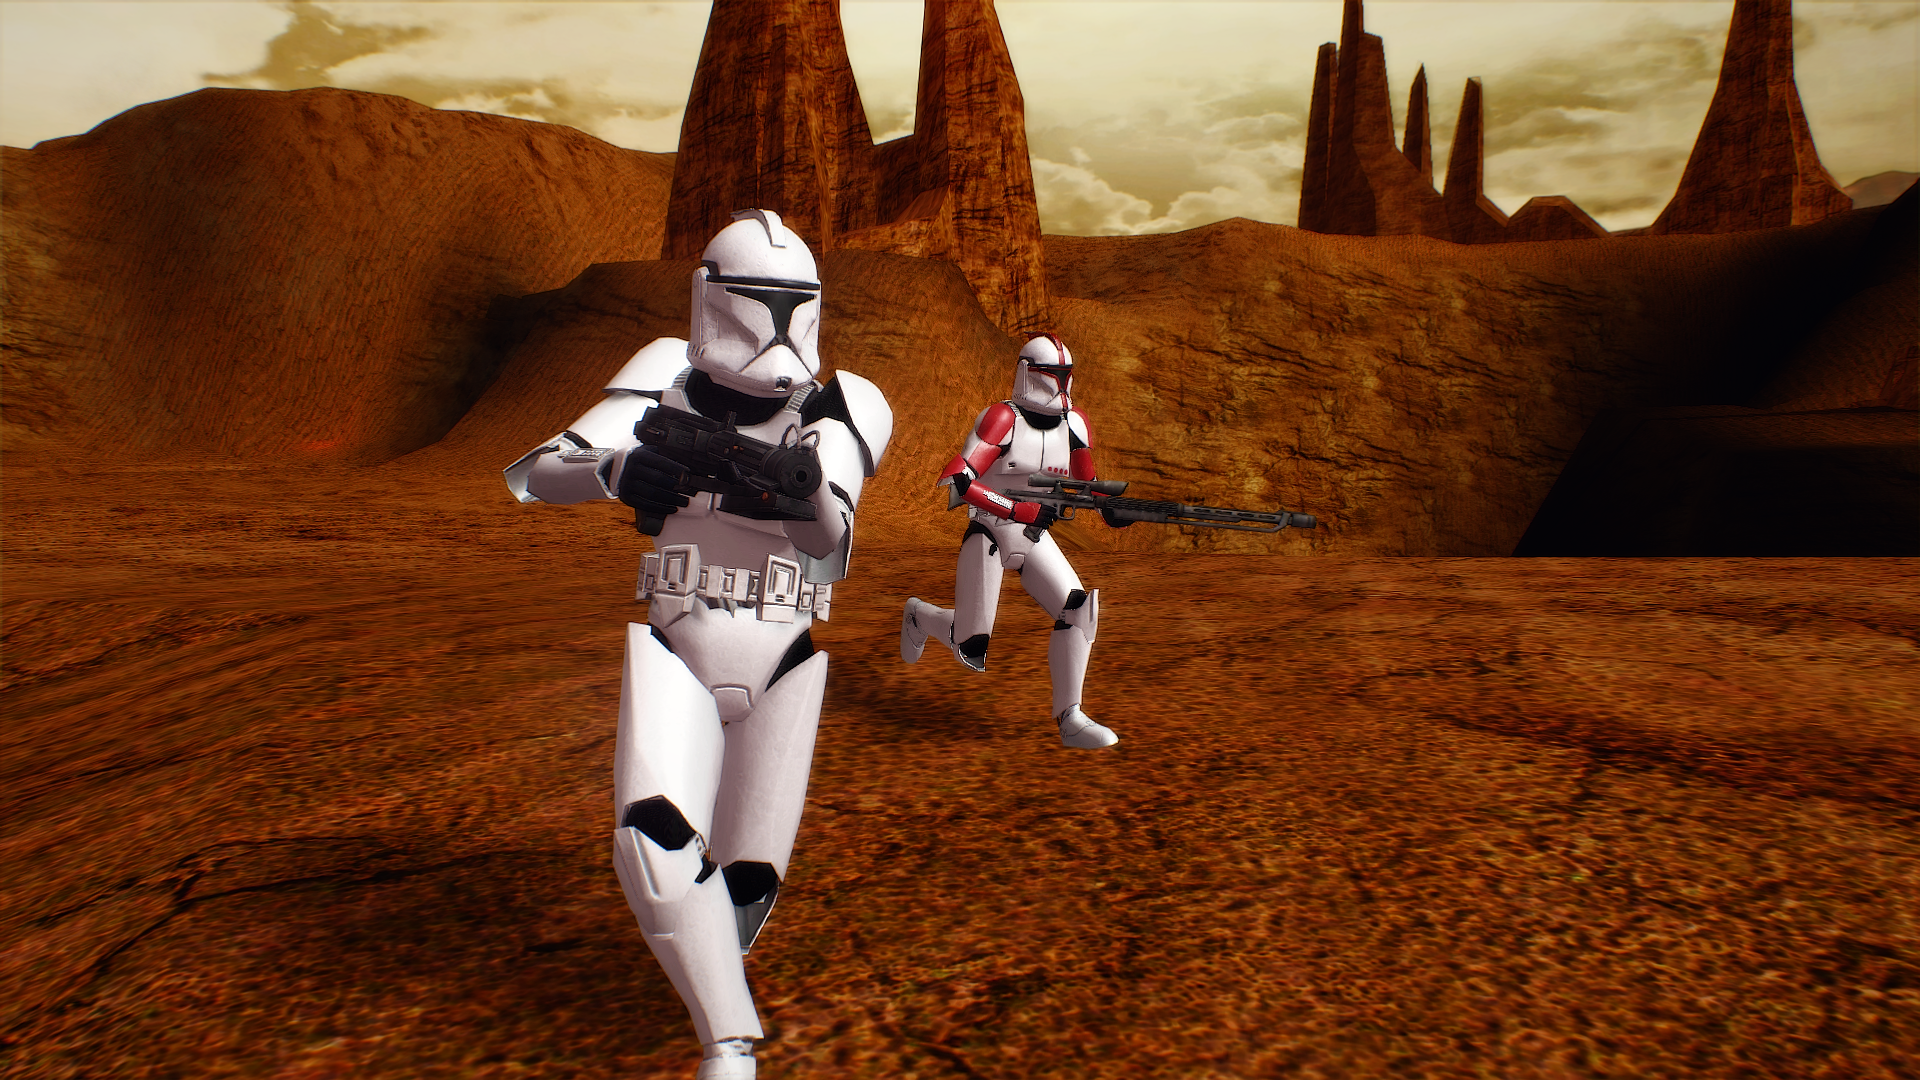 star wars battlefront 2 graphics mods